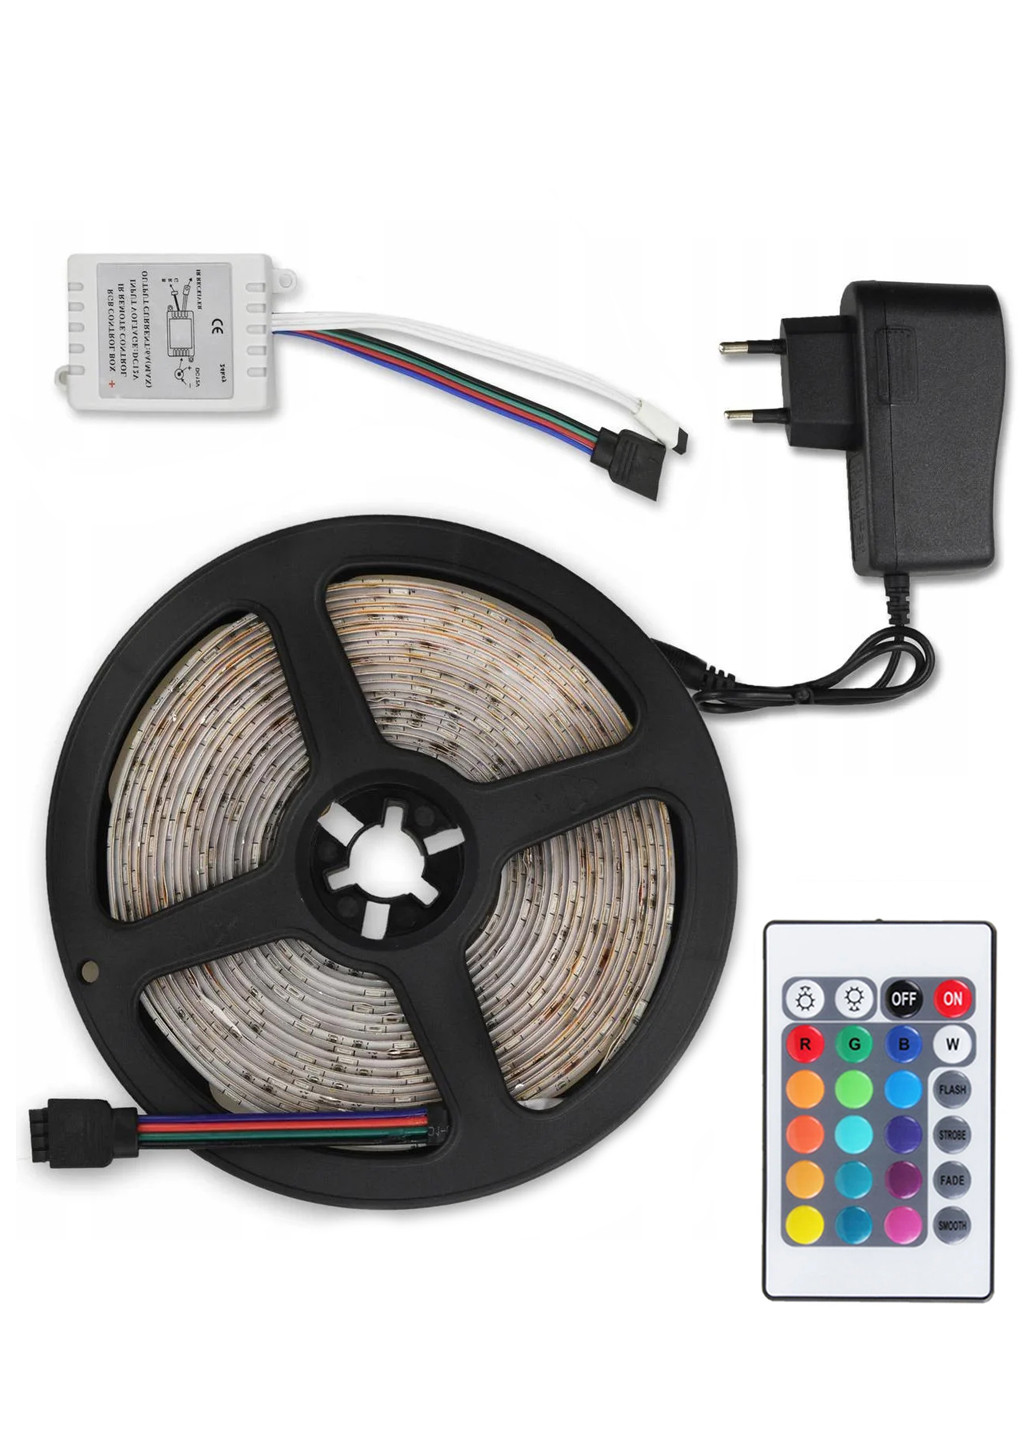 Светодиодная RGB лента 270 LED 5м + пульт + блок питания + контроллер UFT ls01 (251198626)